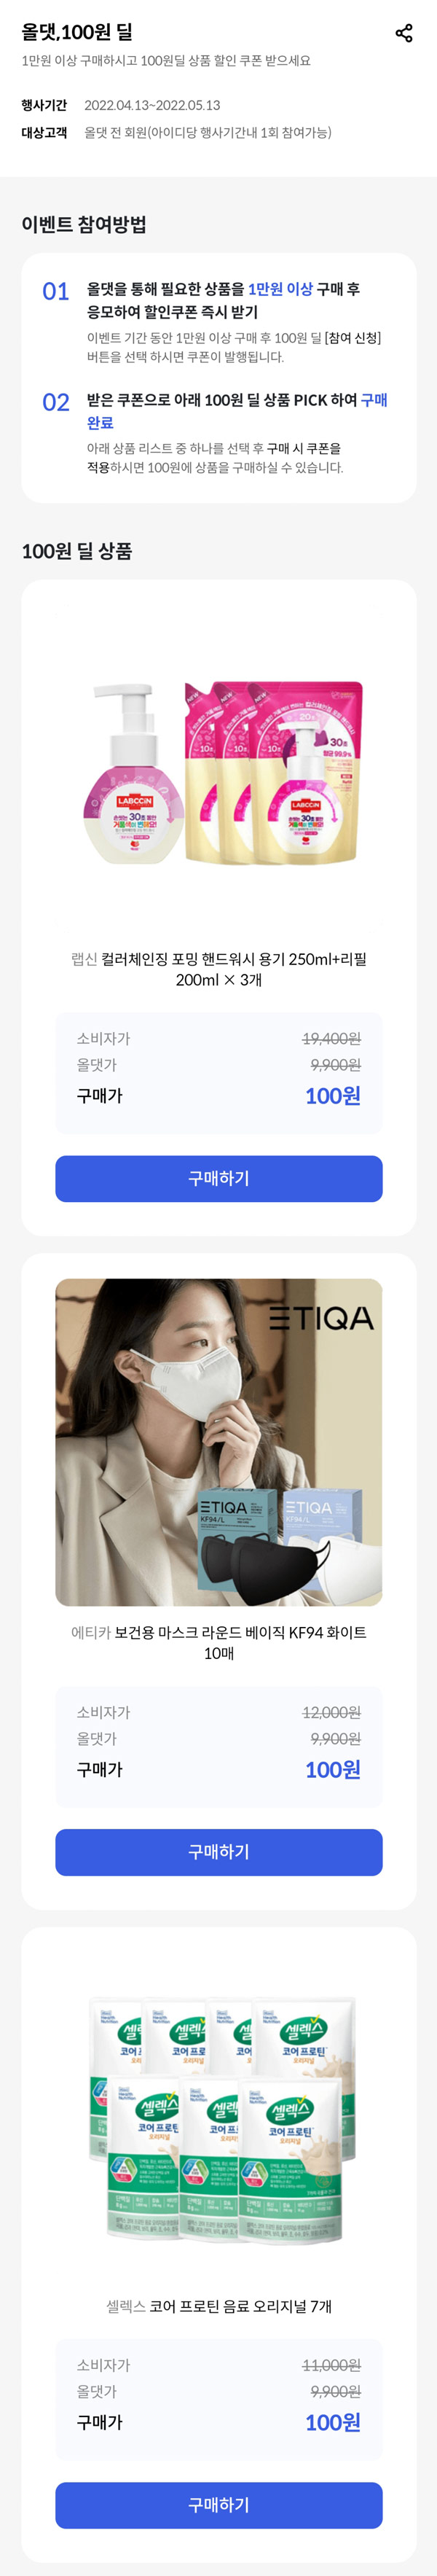 신한플레이 올댓쇼핑 첫구매 100원딜 이벤트 신규회원